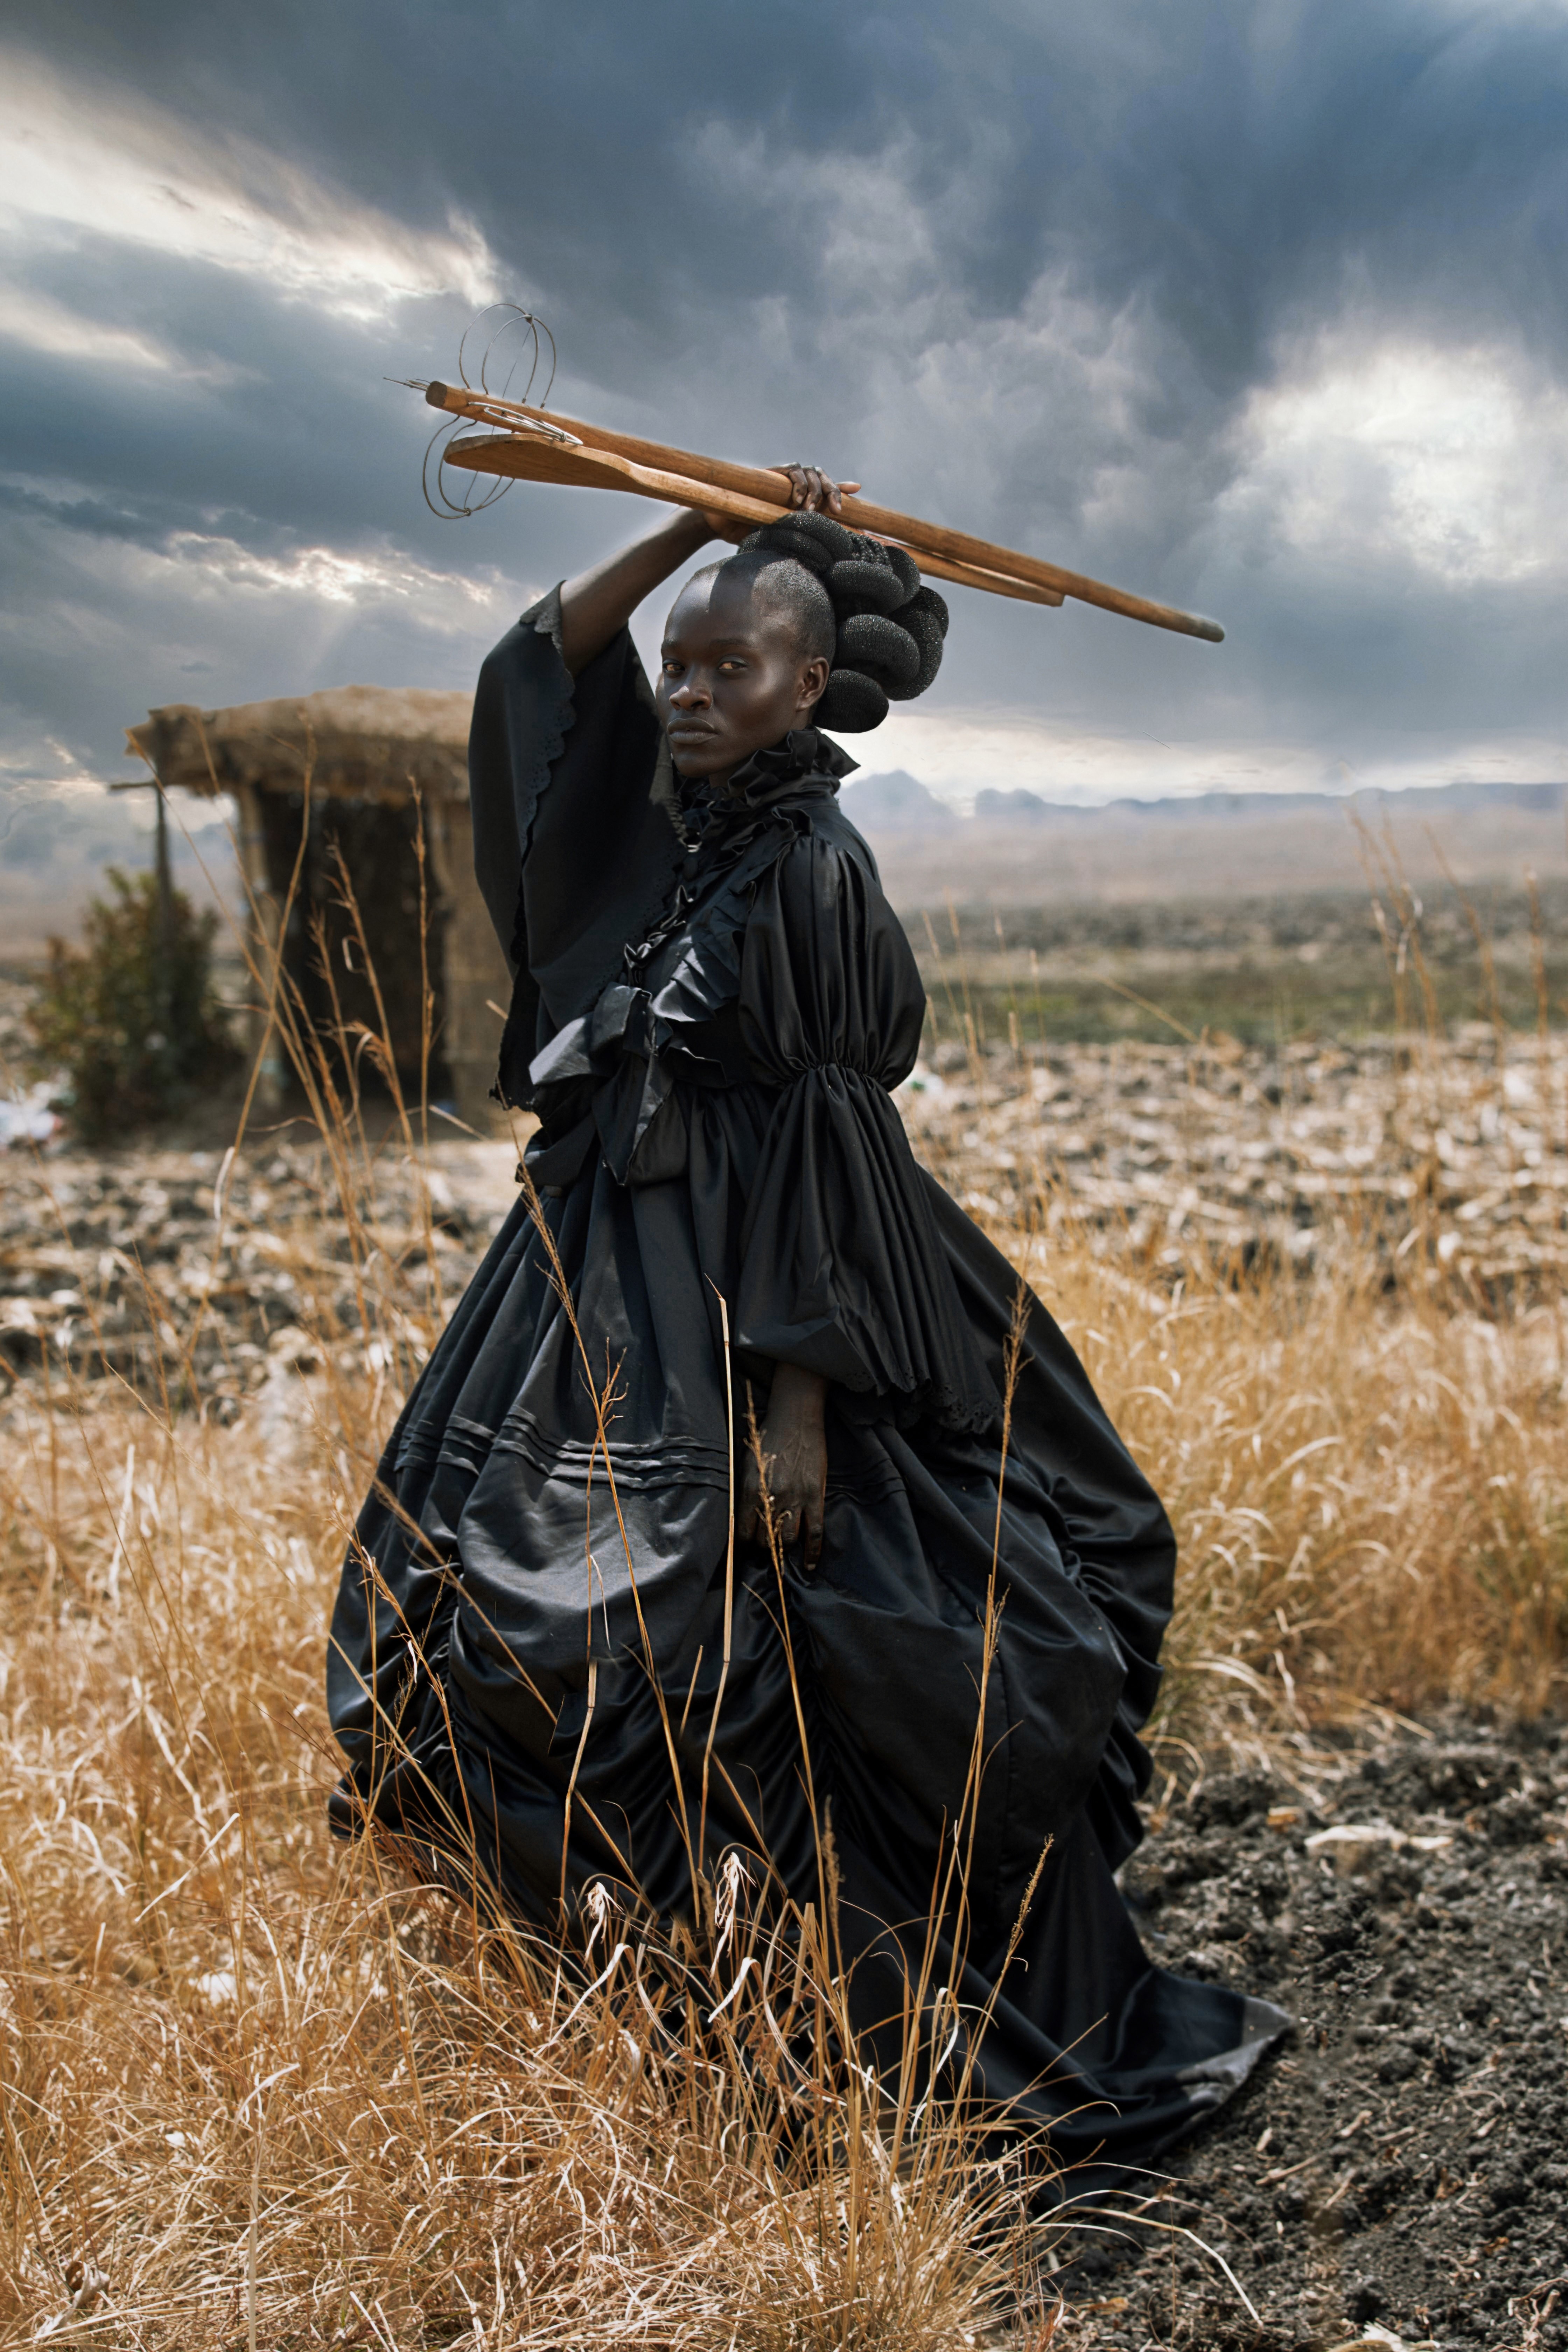 Фотограф года в Открытой номинации и 1 место в категории Креатив, 2021. Африканская Виктория. Автор Тамари Кудиту